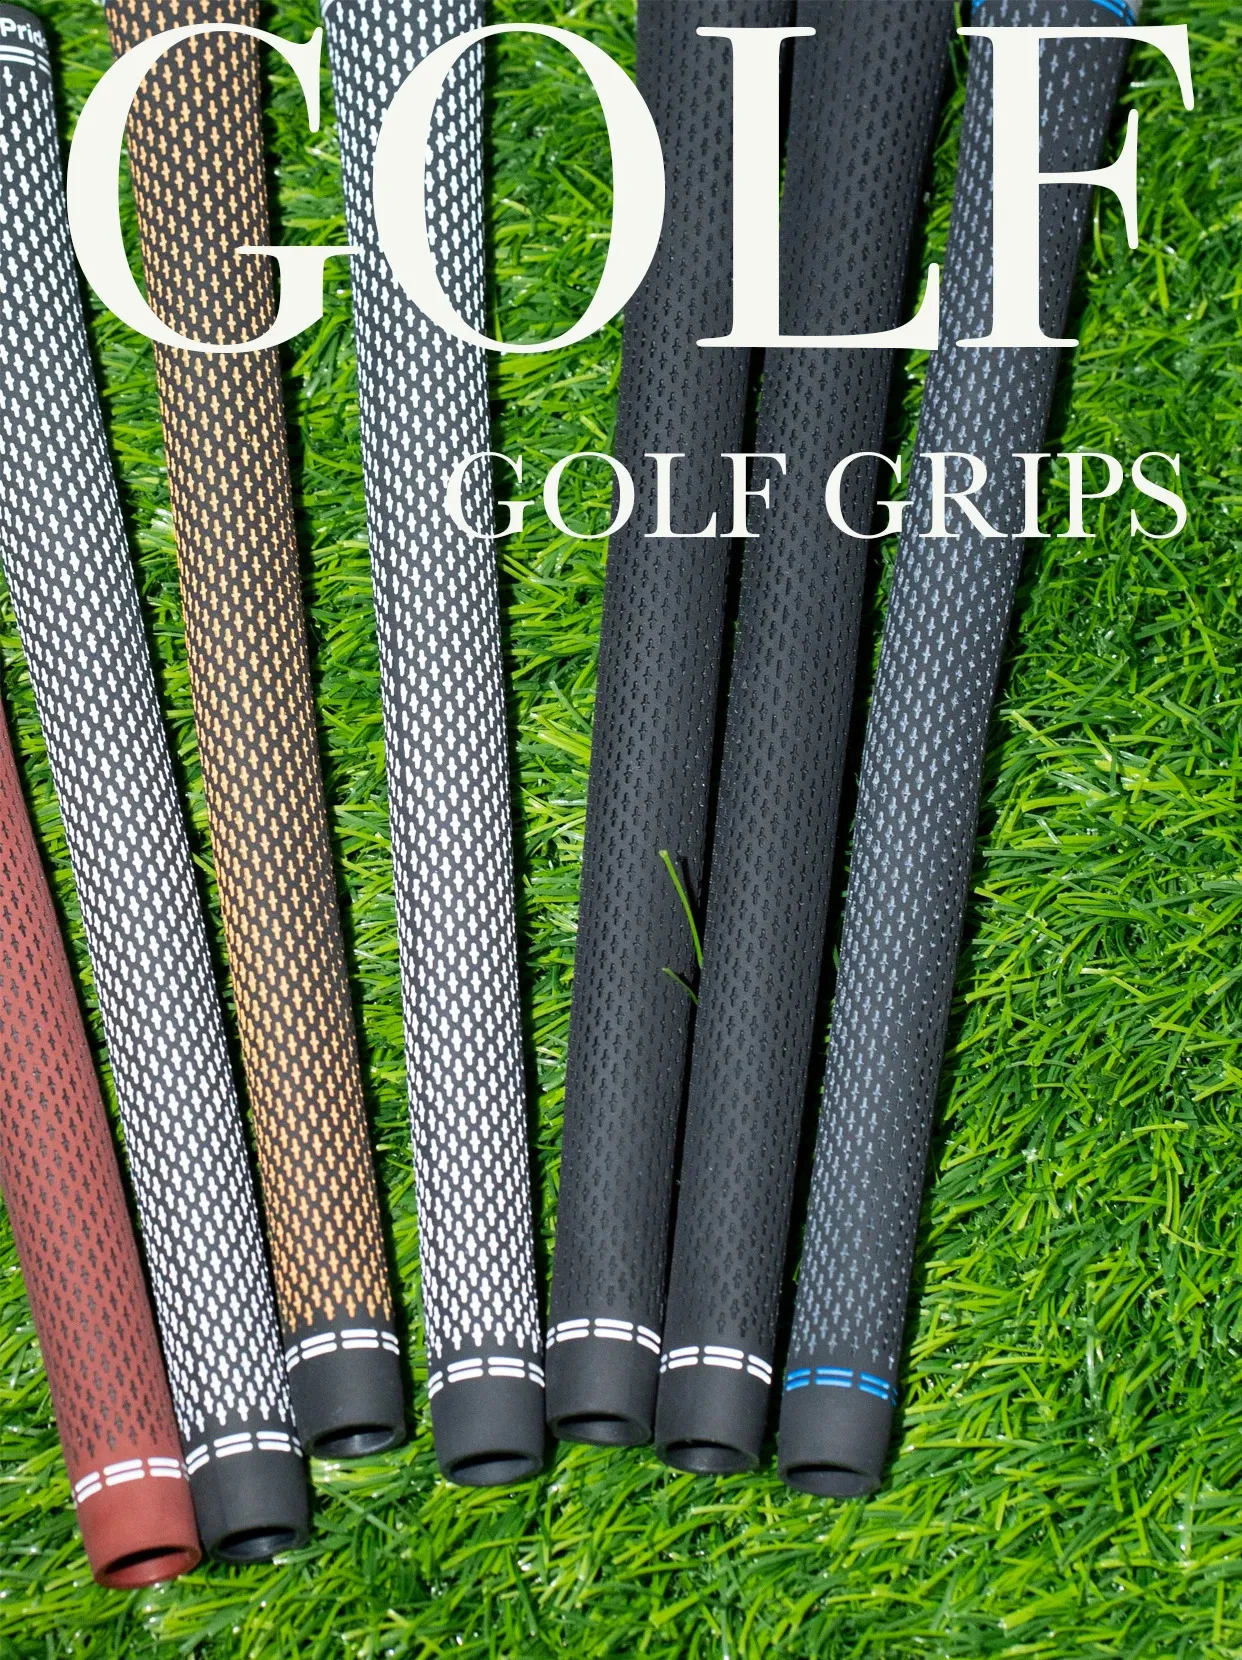 360Golf Grip GP Gummi Golf Club Grips Undersize/Standard/Mitteilung 240323